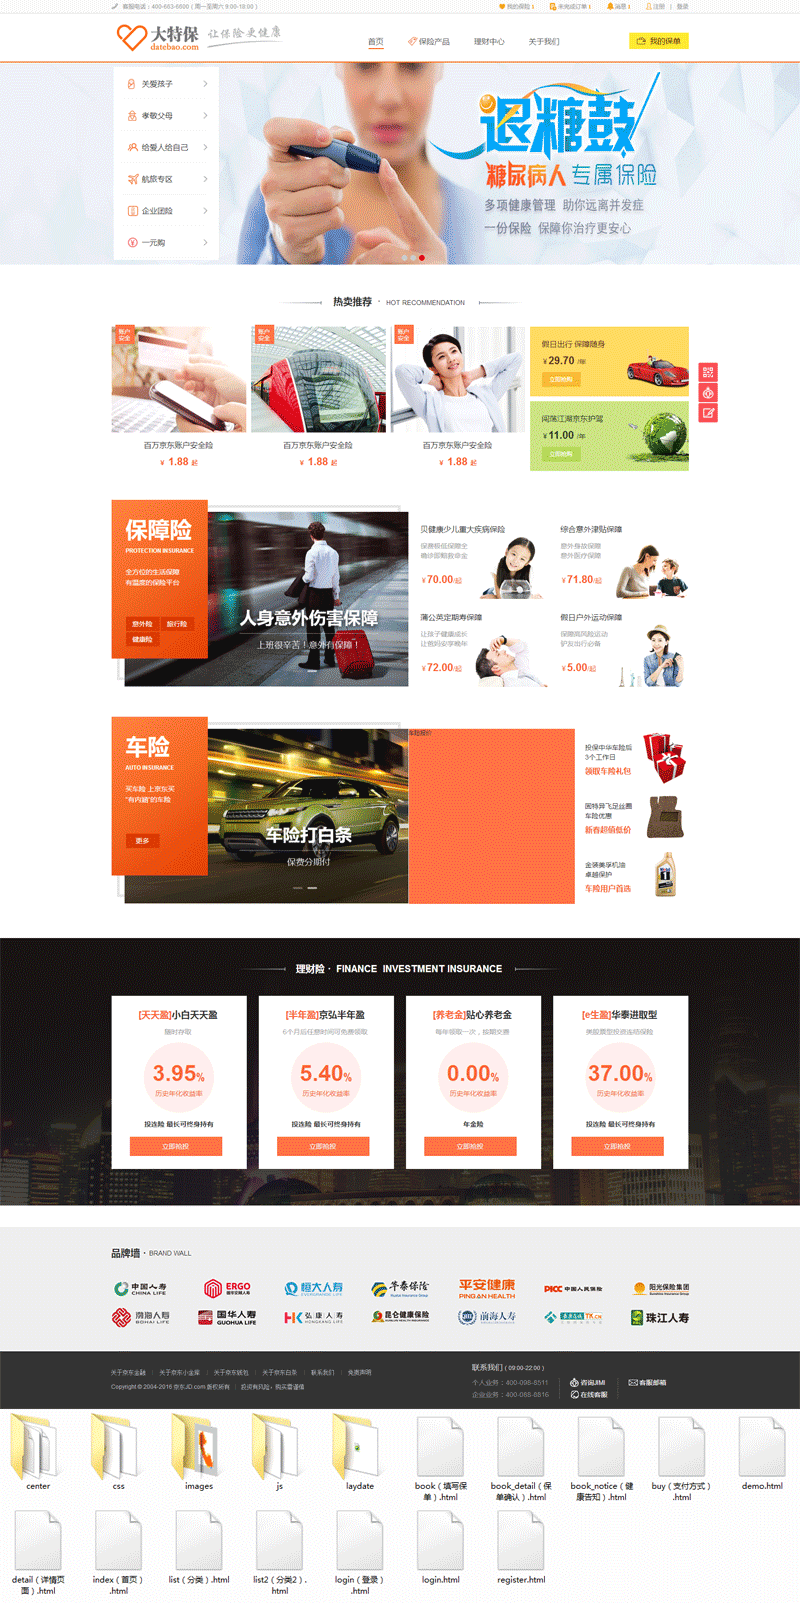 橙色的大特保保险商城网站html模板